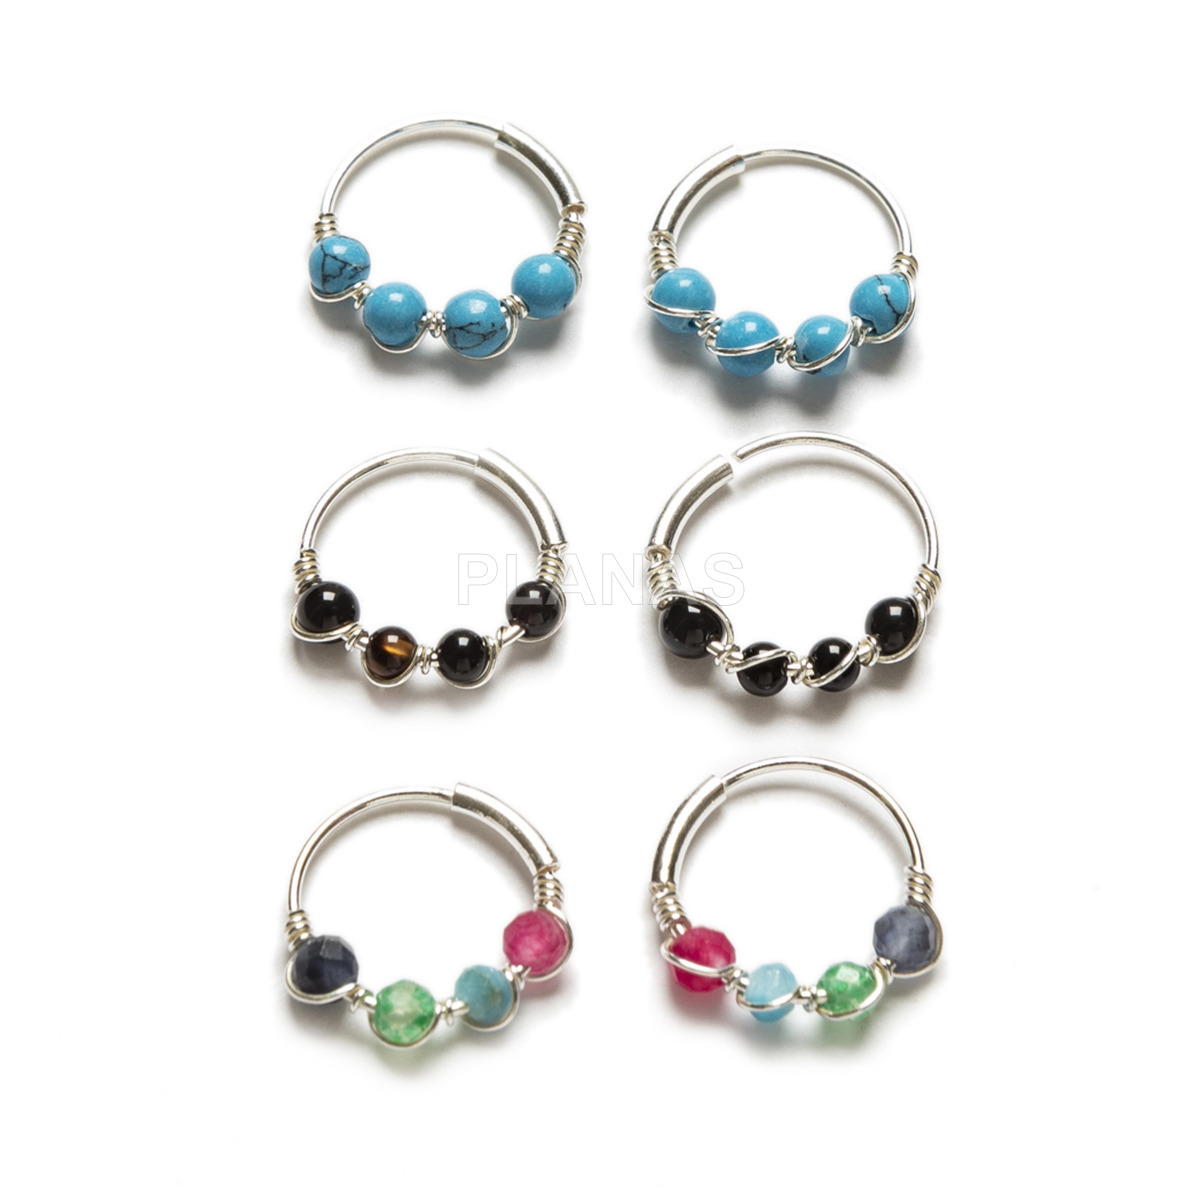 Sterling silver earrings and enamel balls.